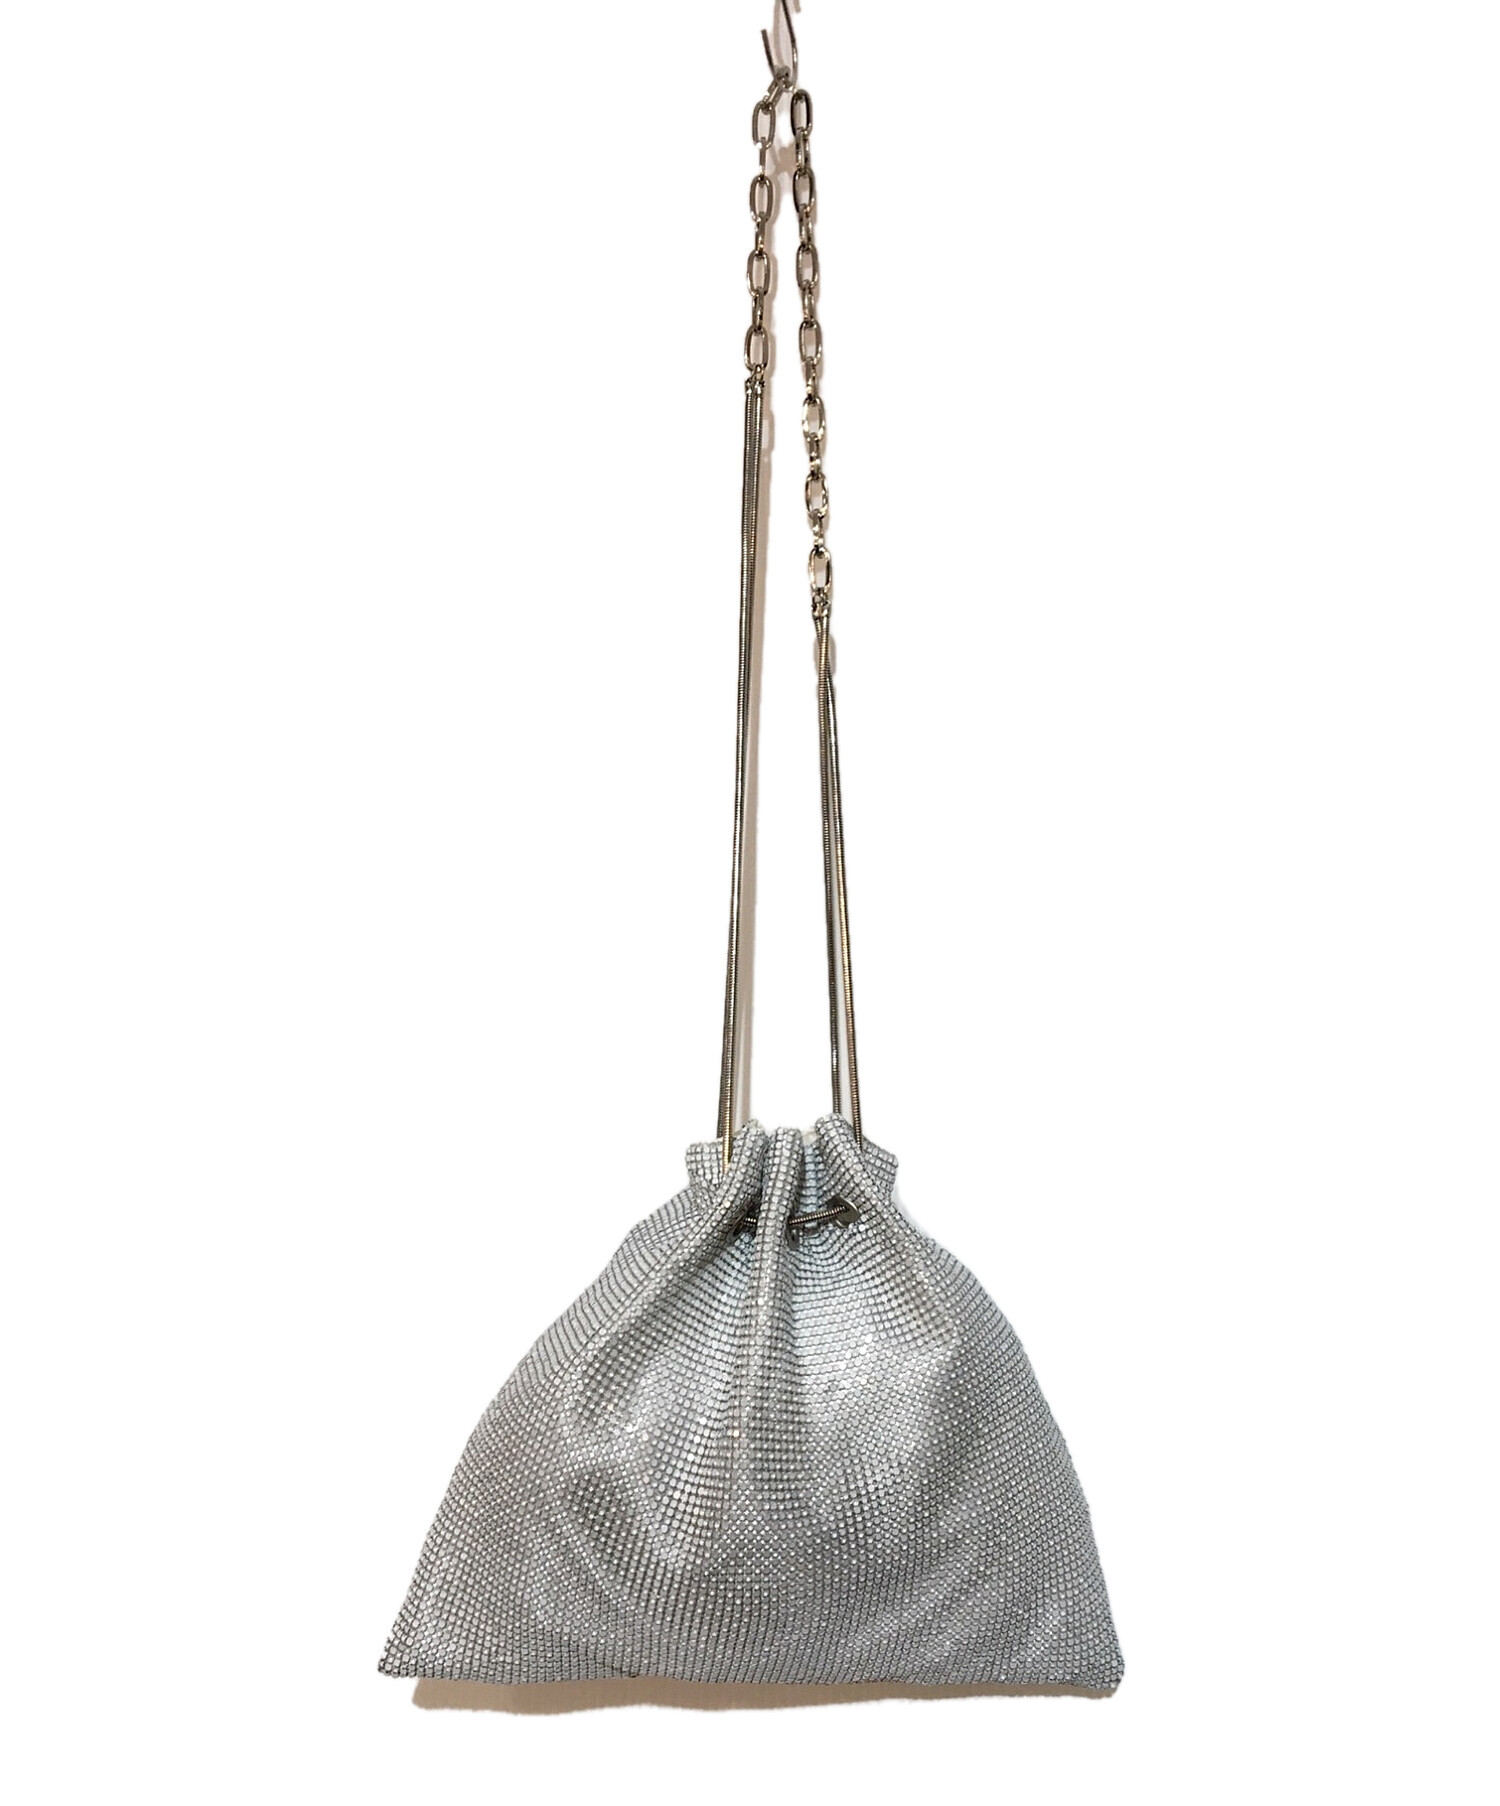 BIGOTRE purse ballメタルバッグsilverビゴター6ROKU - ショルダーバッグ